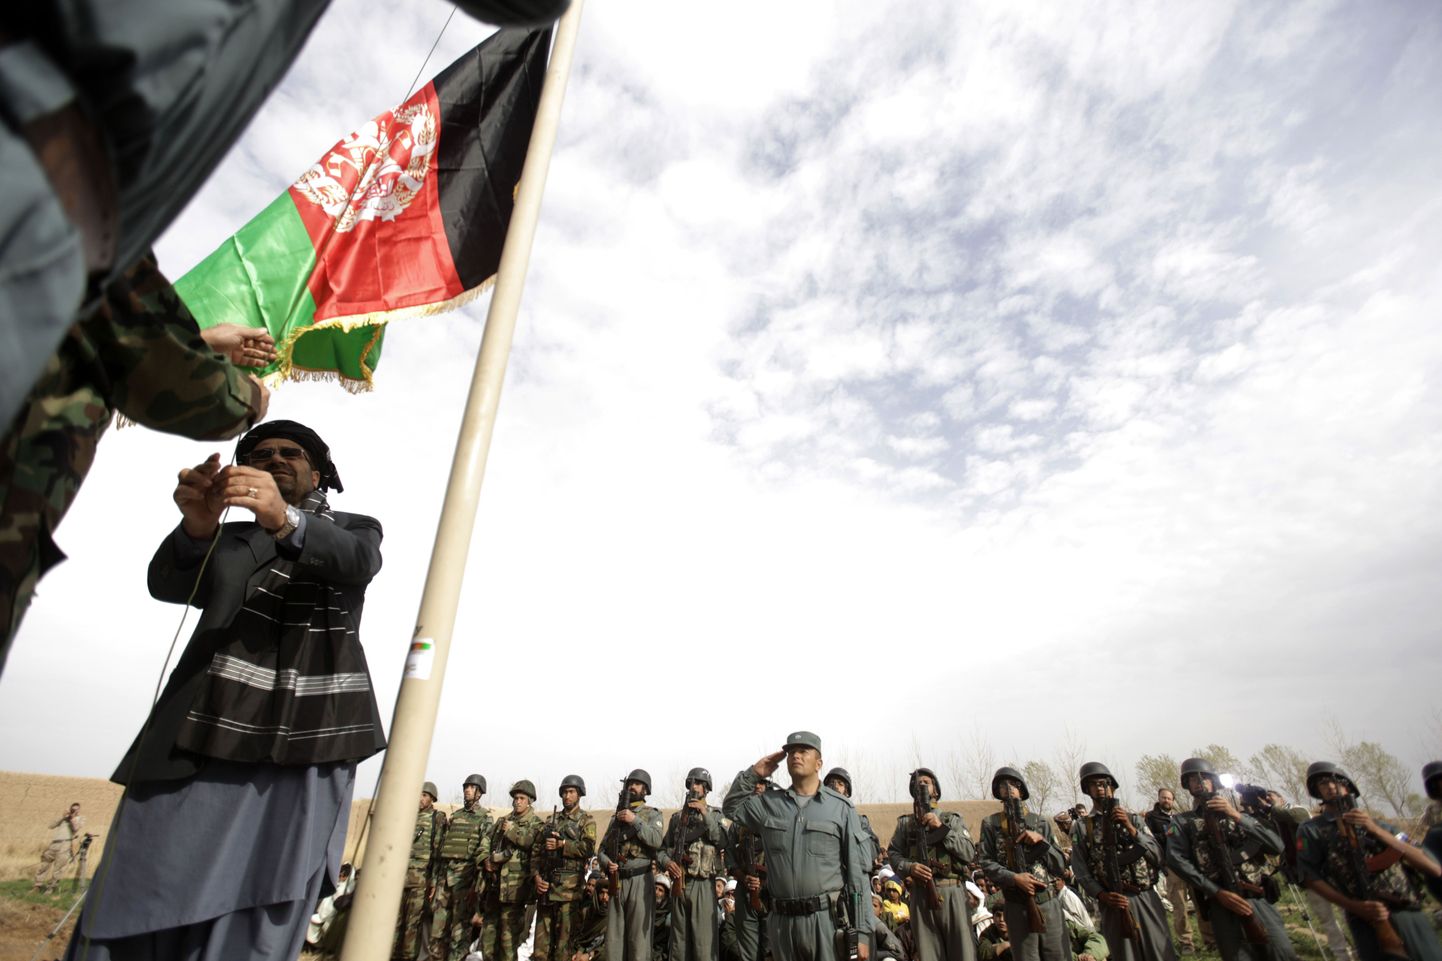 Helmandi provintsi tsiviilkuberner Gulab Mangal heiskamas Afganistani riigilippu Marjah' linnas.